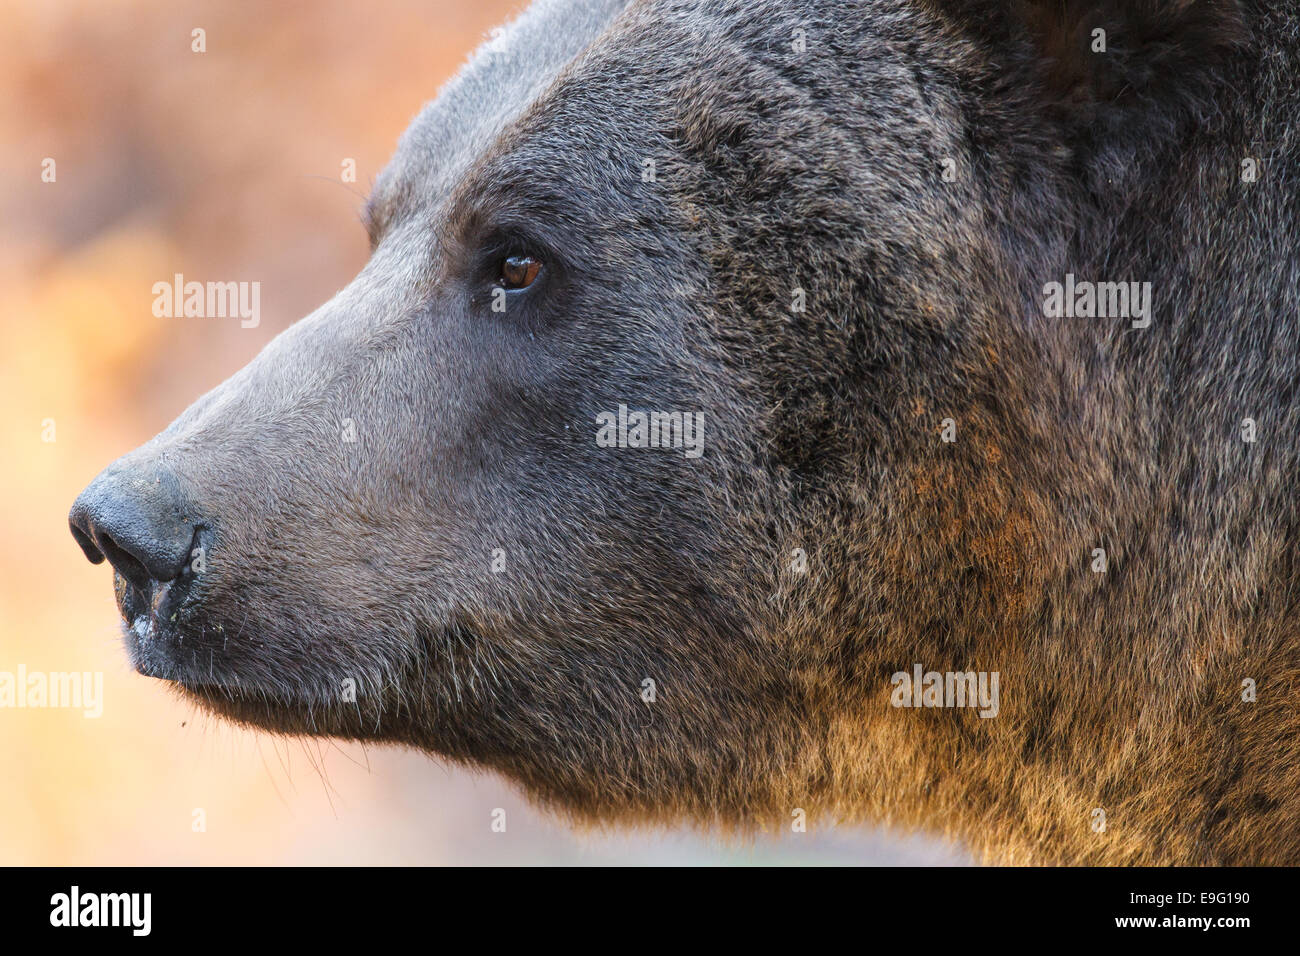 brown bear [Ursus arctos] Stock Photo